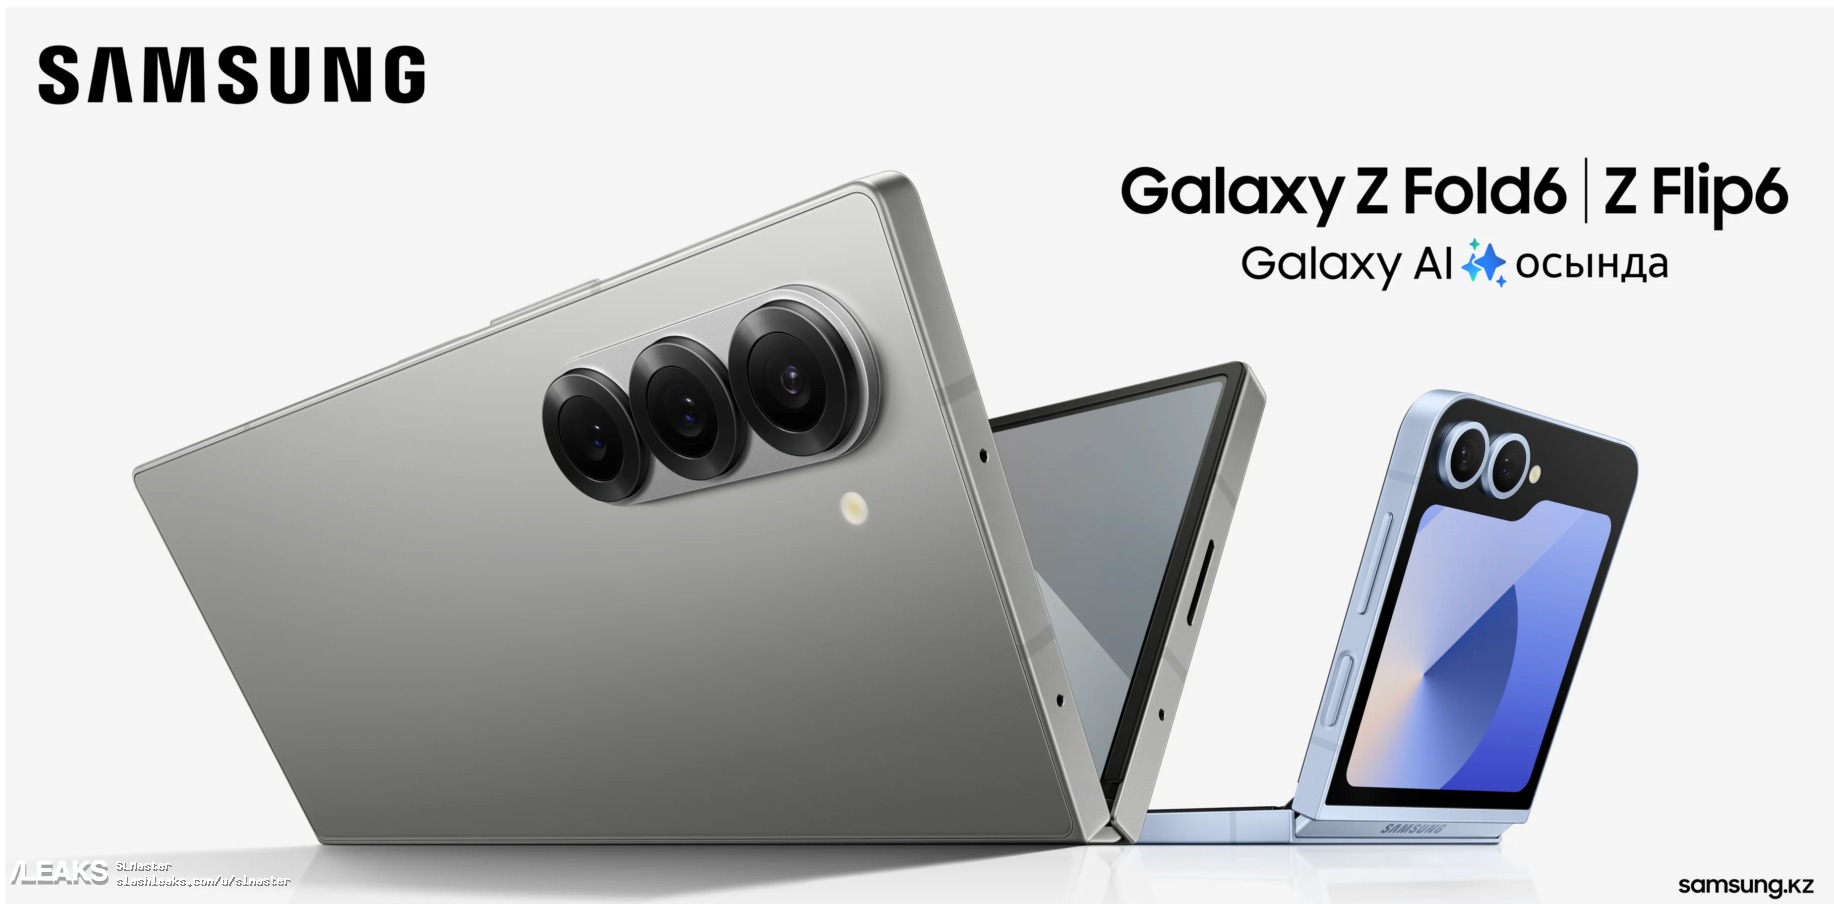 תמונת פרומו דלפה של הטלפונים המתקפלים של Samsung Galaxy Z Fold 6 ו-Z Flip 6